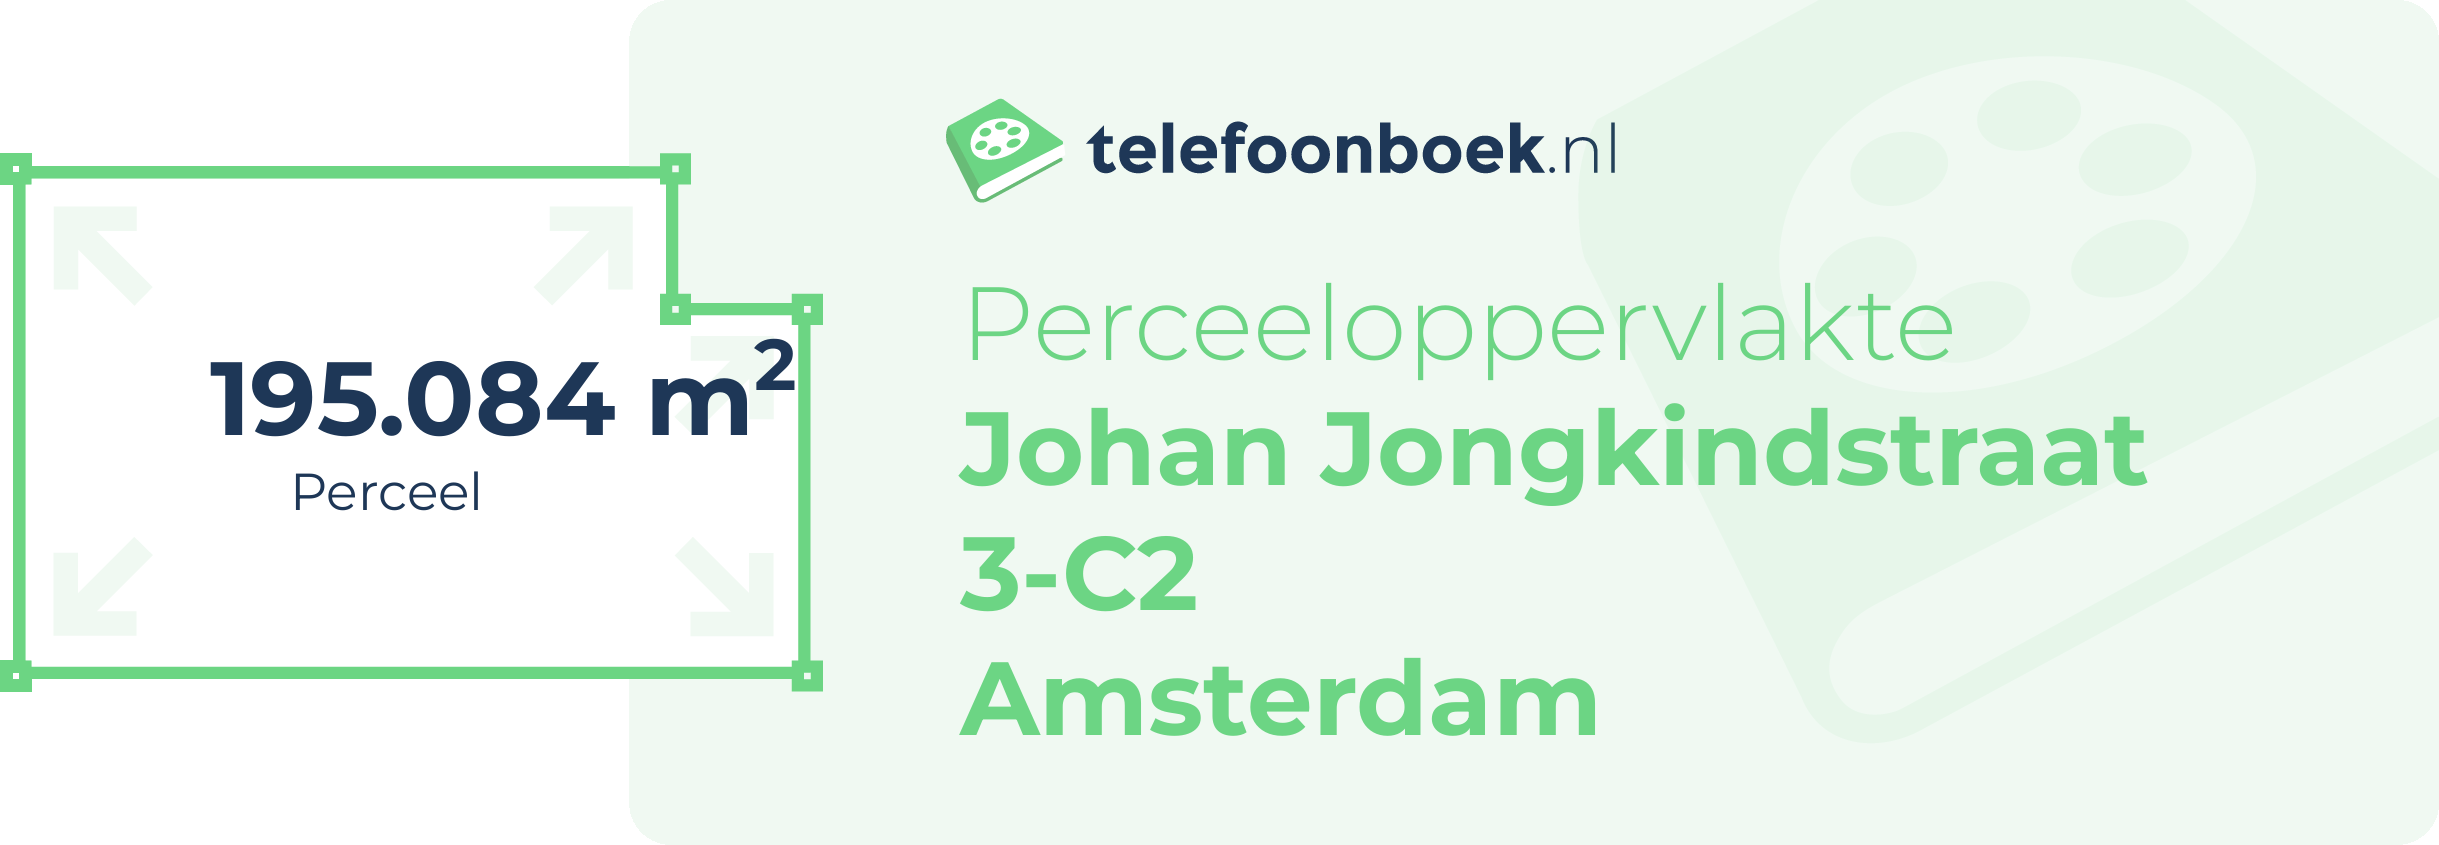 Perceeloppervlakte Johan Jongkindstraat 3-C2 Amsterdam